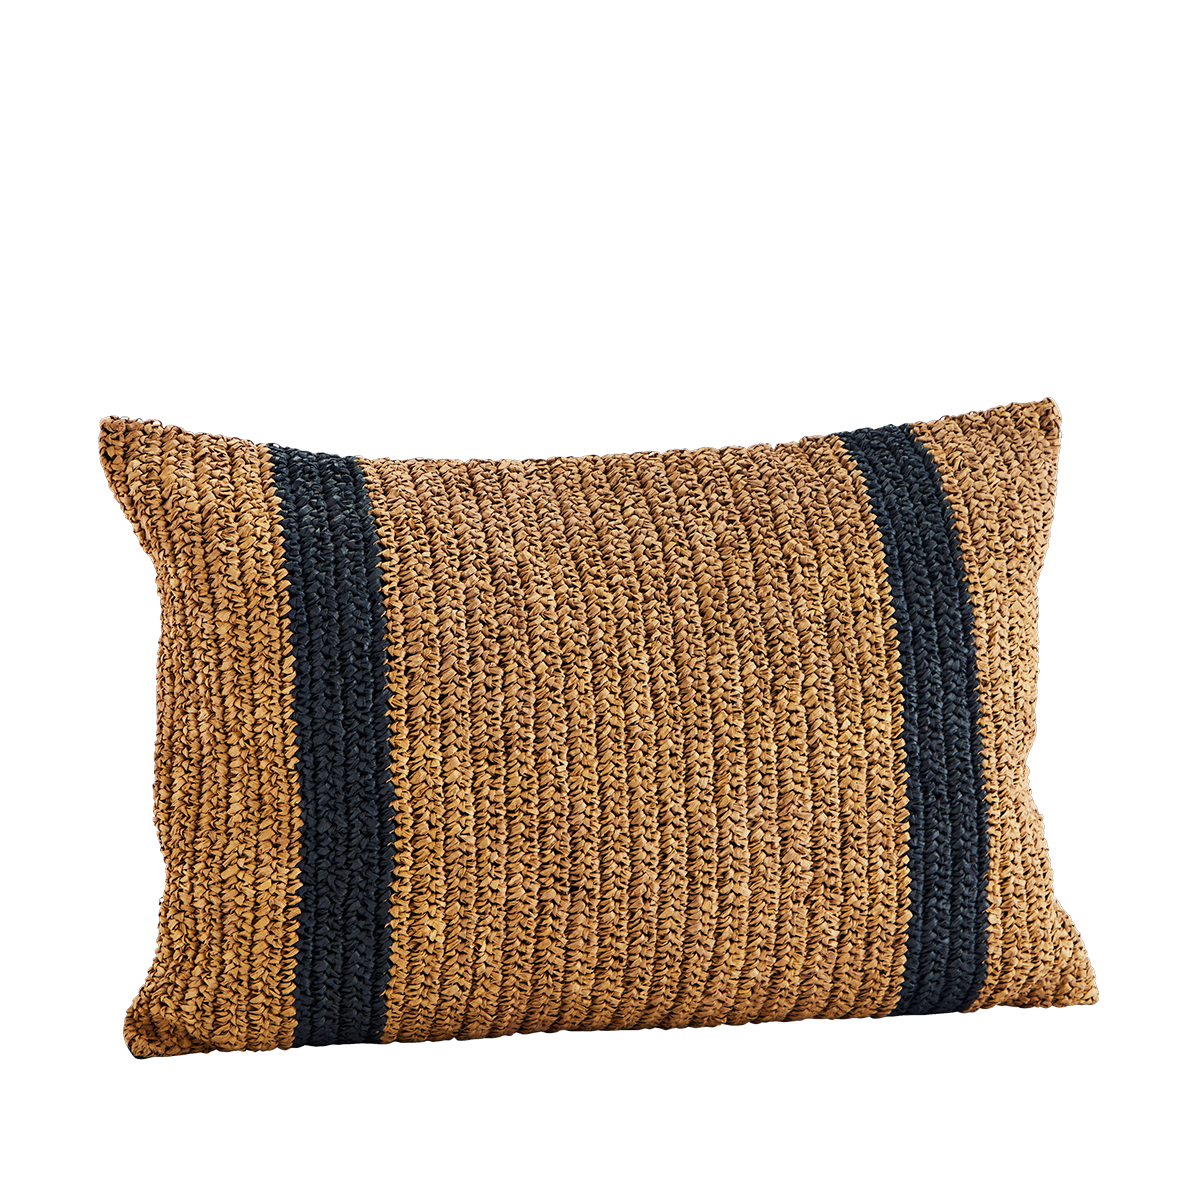 Raffia cushion cover